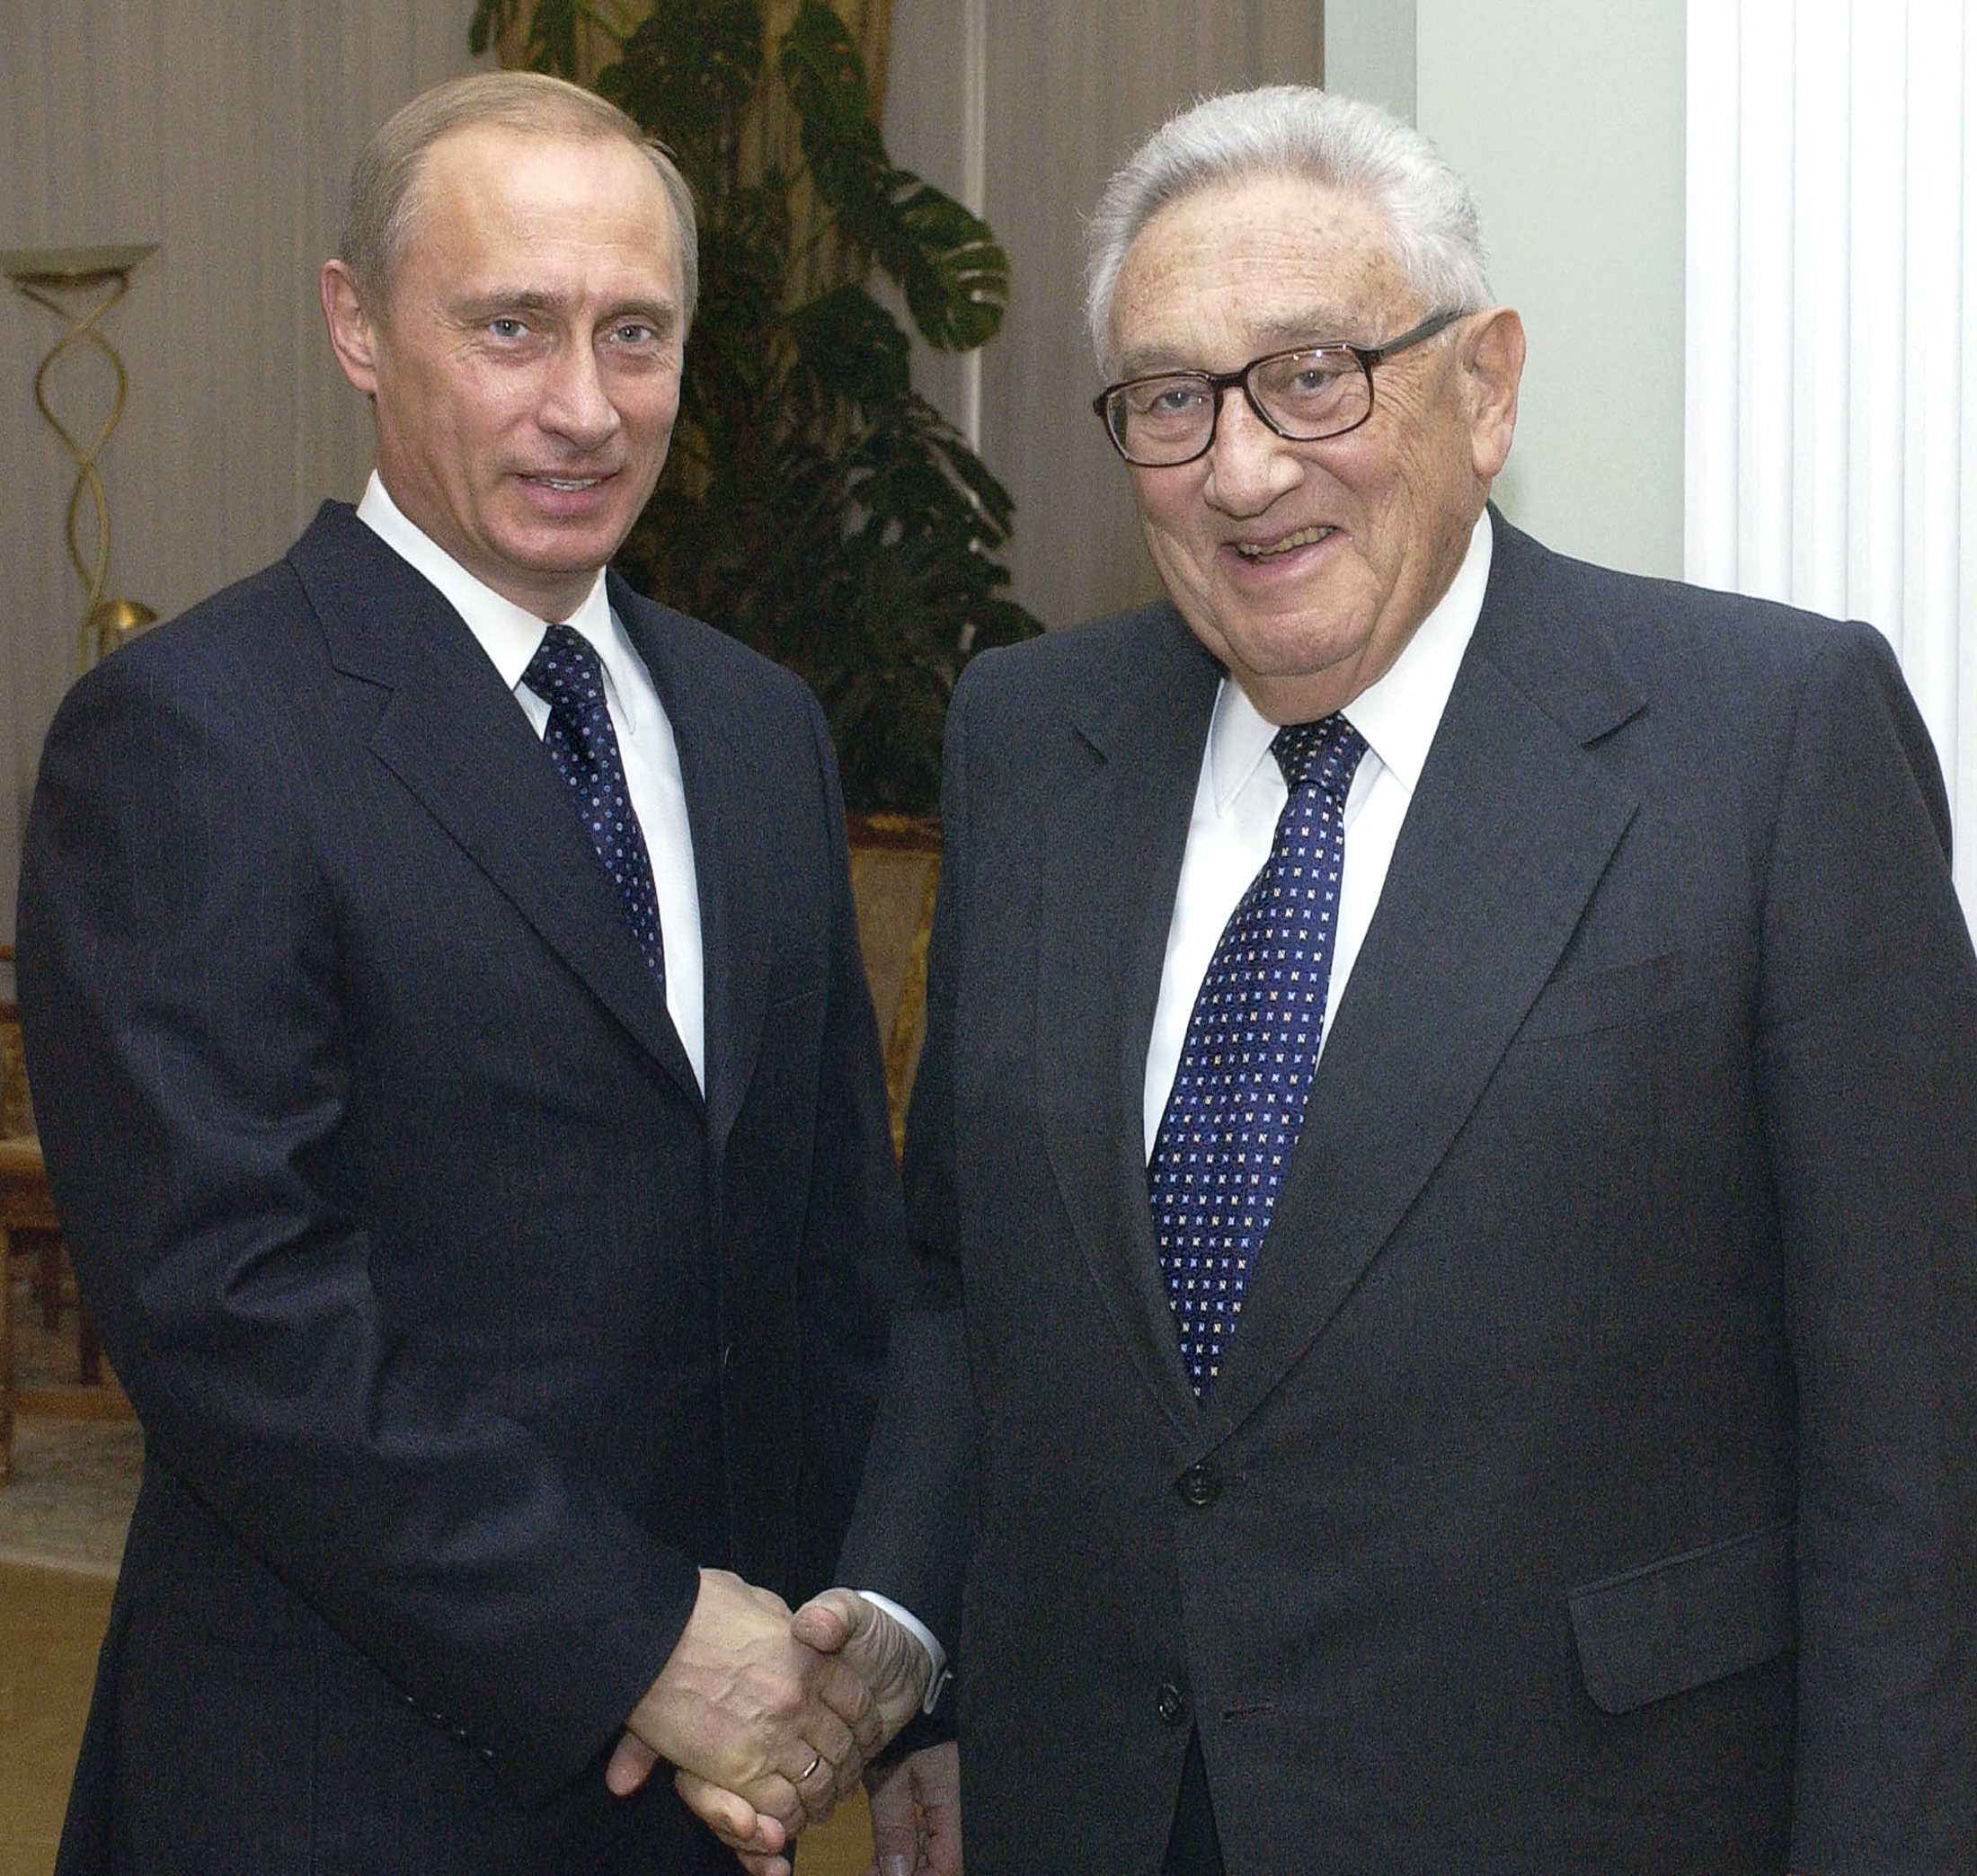 El presidente ruso Vladimir Putin (izq.) da la bienvenida al exsecretario de Estado estadounidense Henry Kissinger en su oficina en Moscú el 2 de marzo de 2004